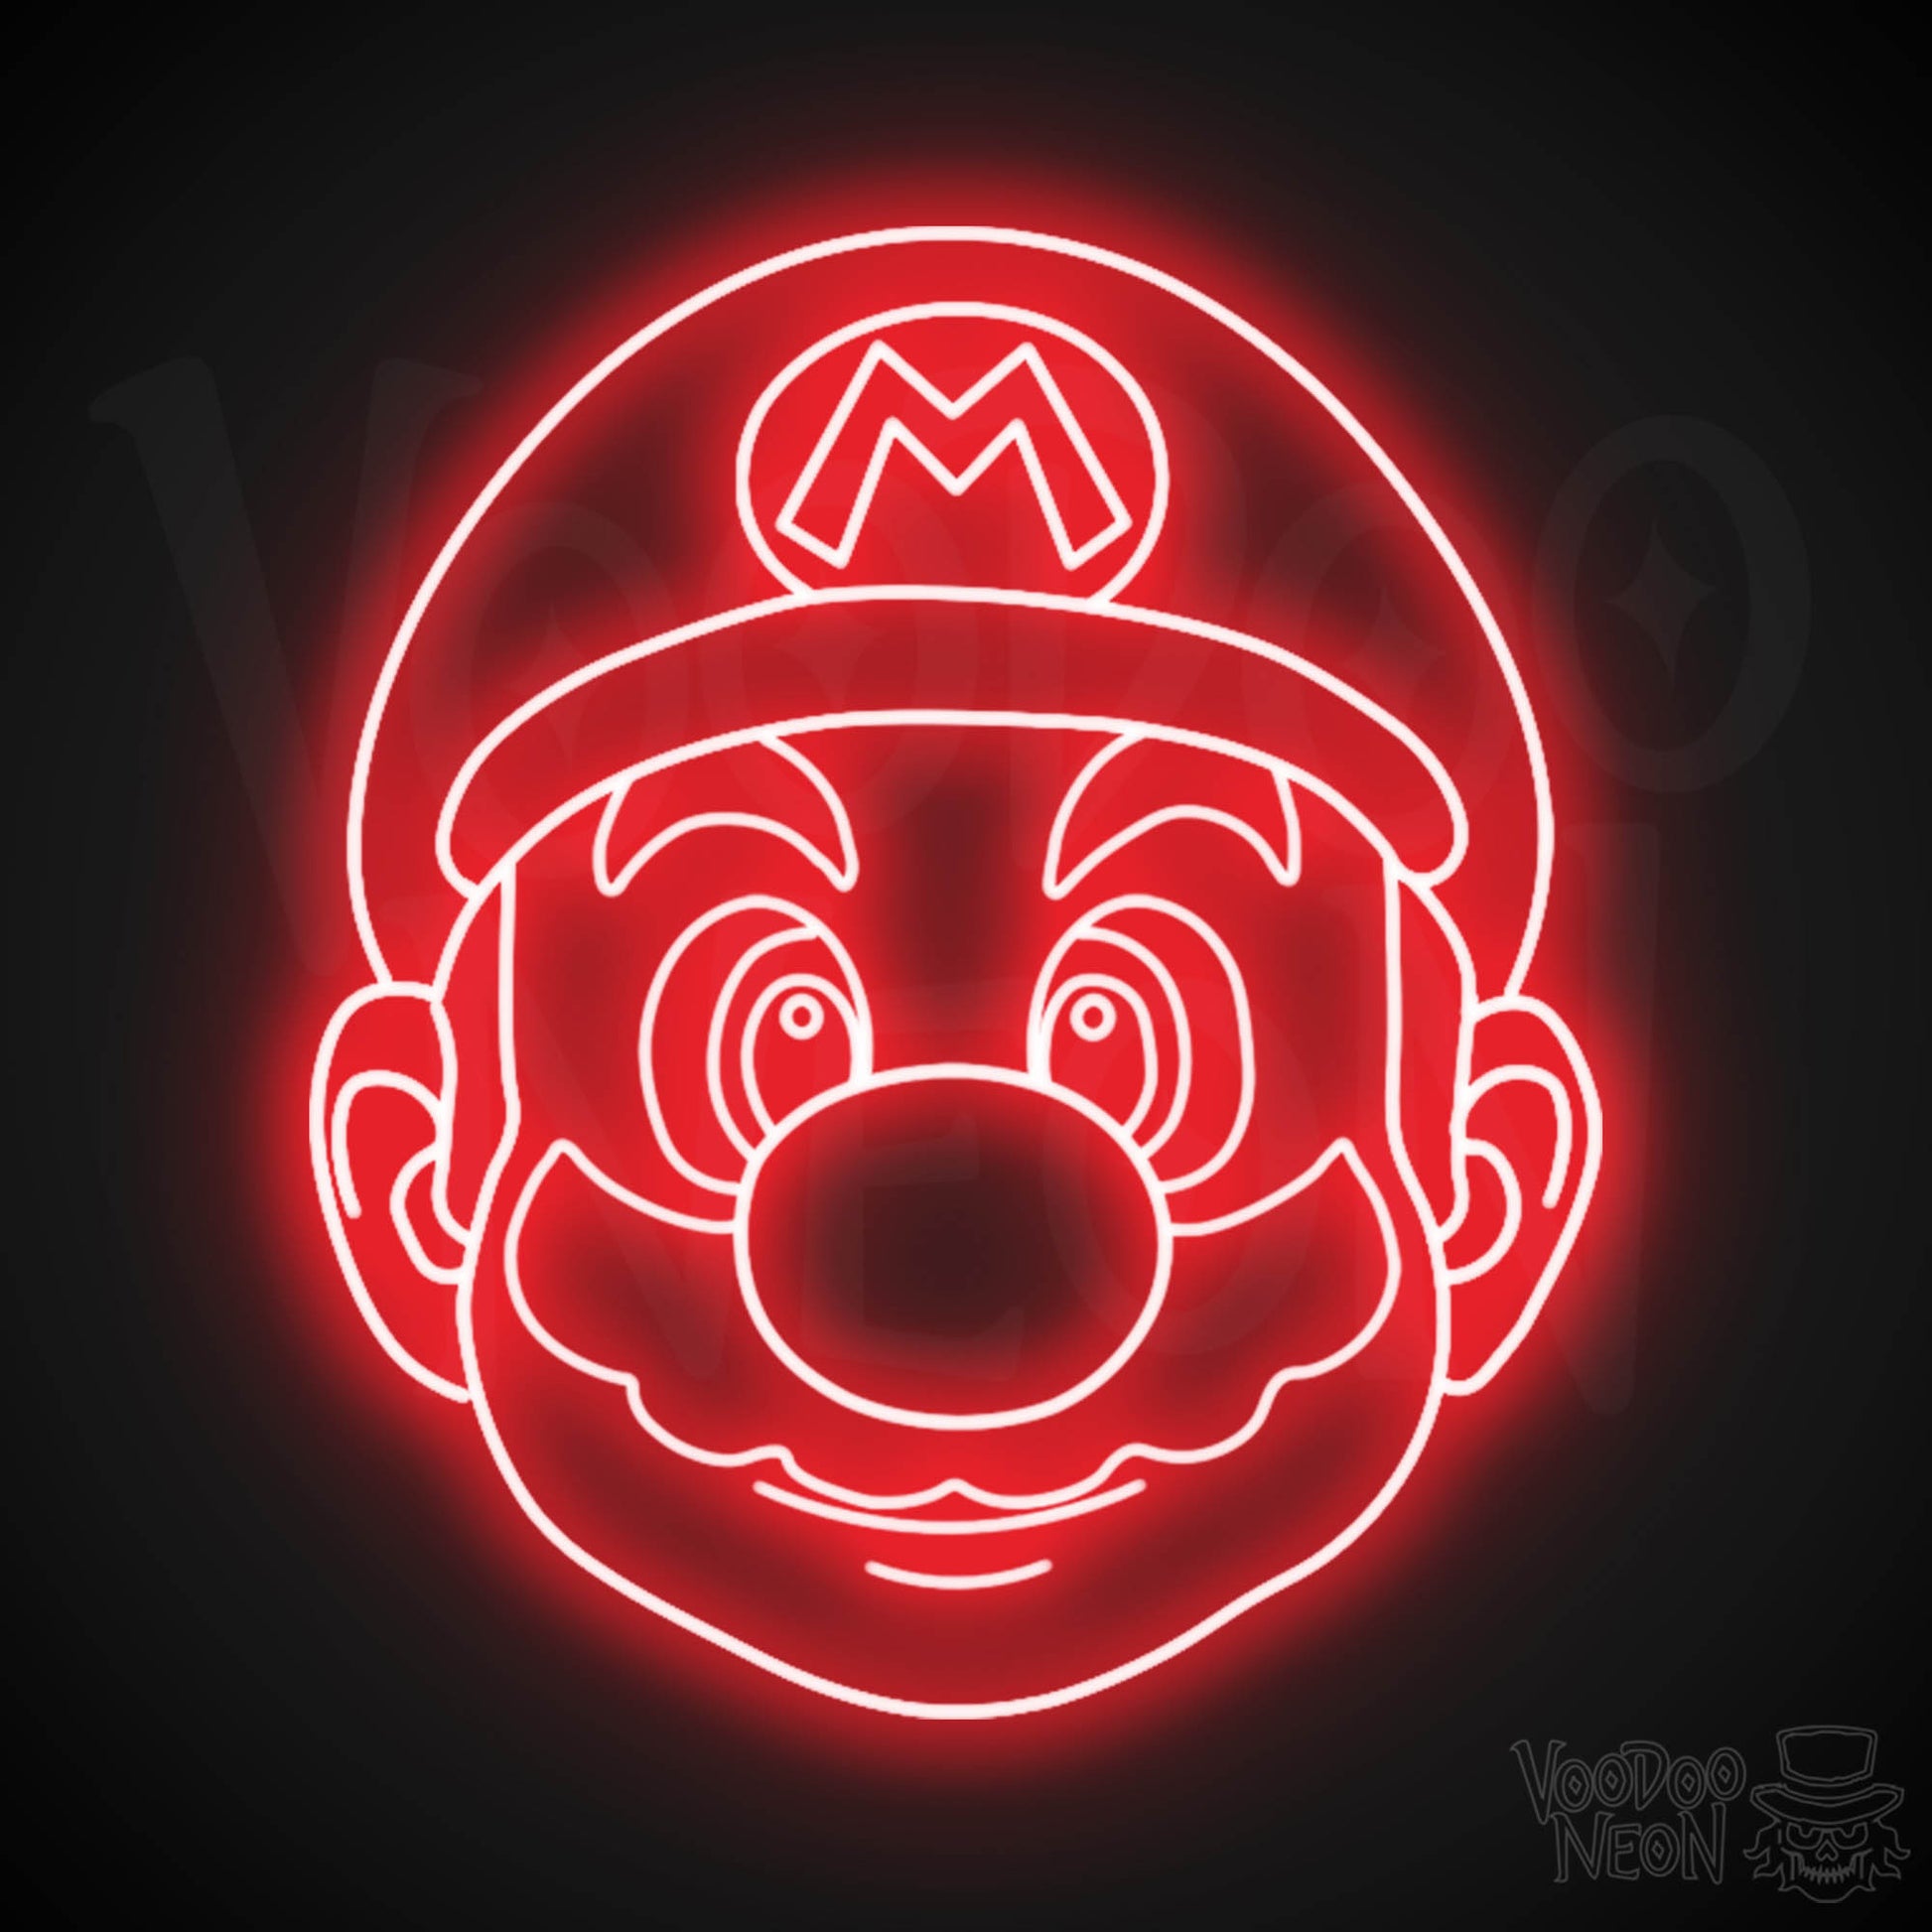 Mario Neon Sign - Mario Sign - Mario Wall Art - LED Neon Wall Art - Color Red